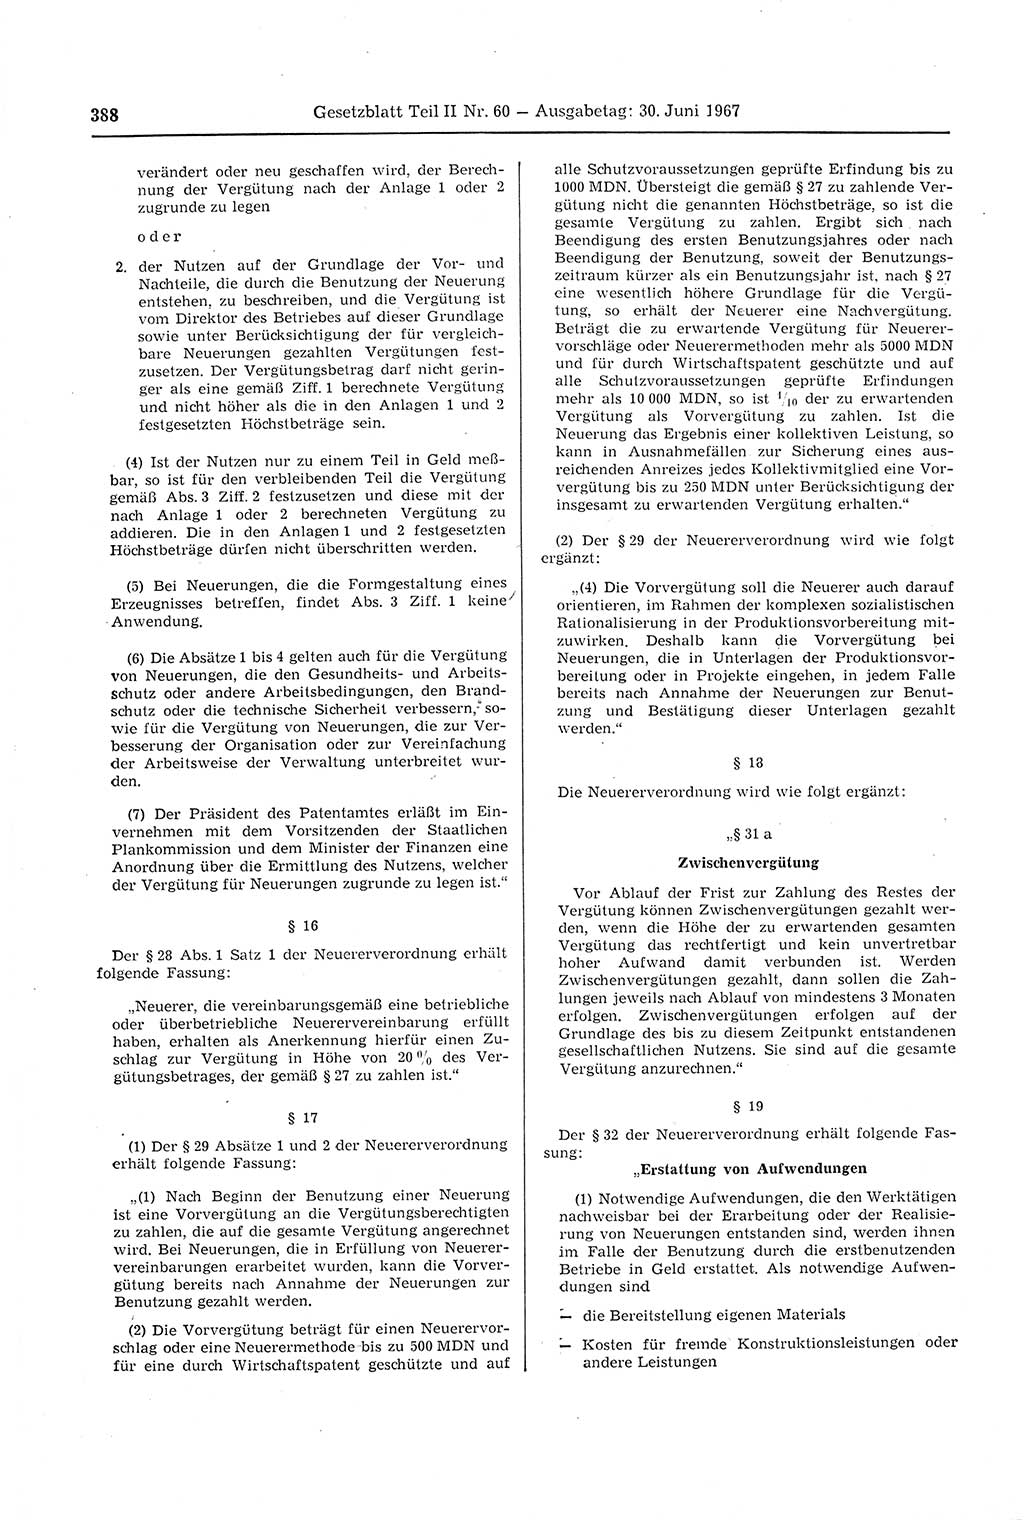 Gesetzblatt (GBl.) der Deutschen Demokratischen Republik (DDR) Teil ⅠⅠ 1967, Seite 388 (GBl. DDR ⅠⅠ 1967, S. 388)